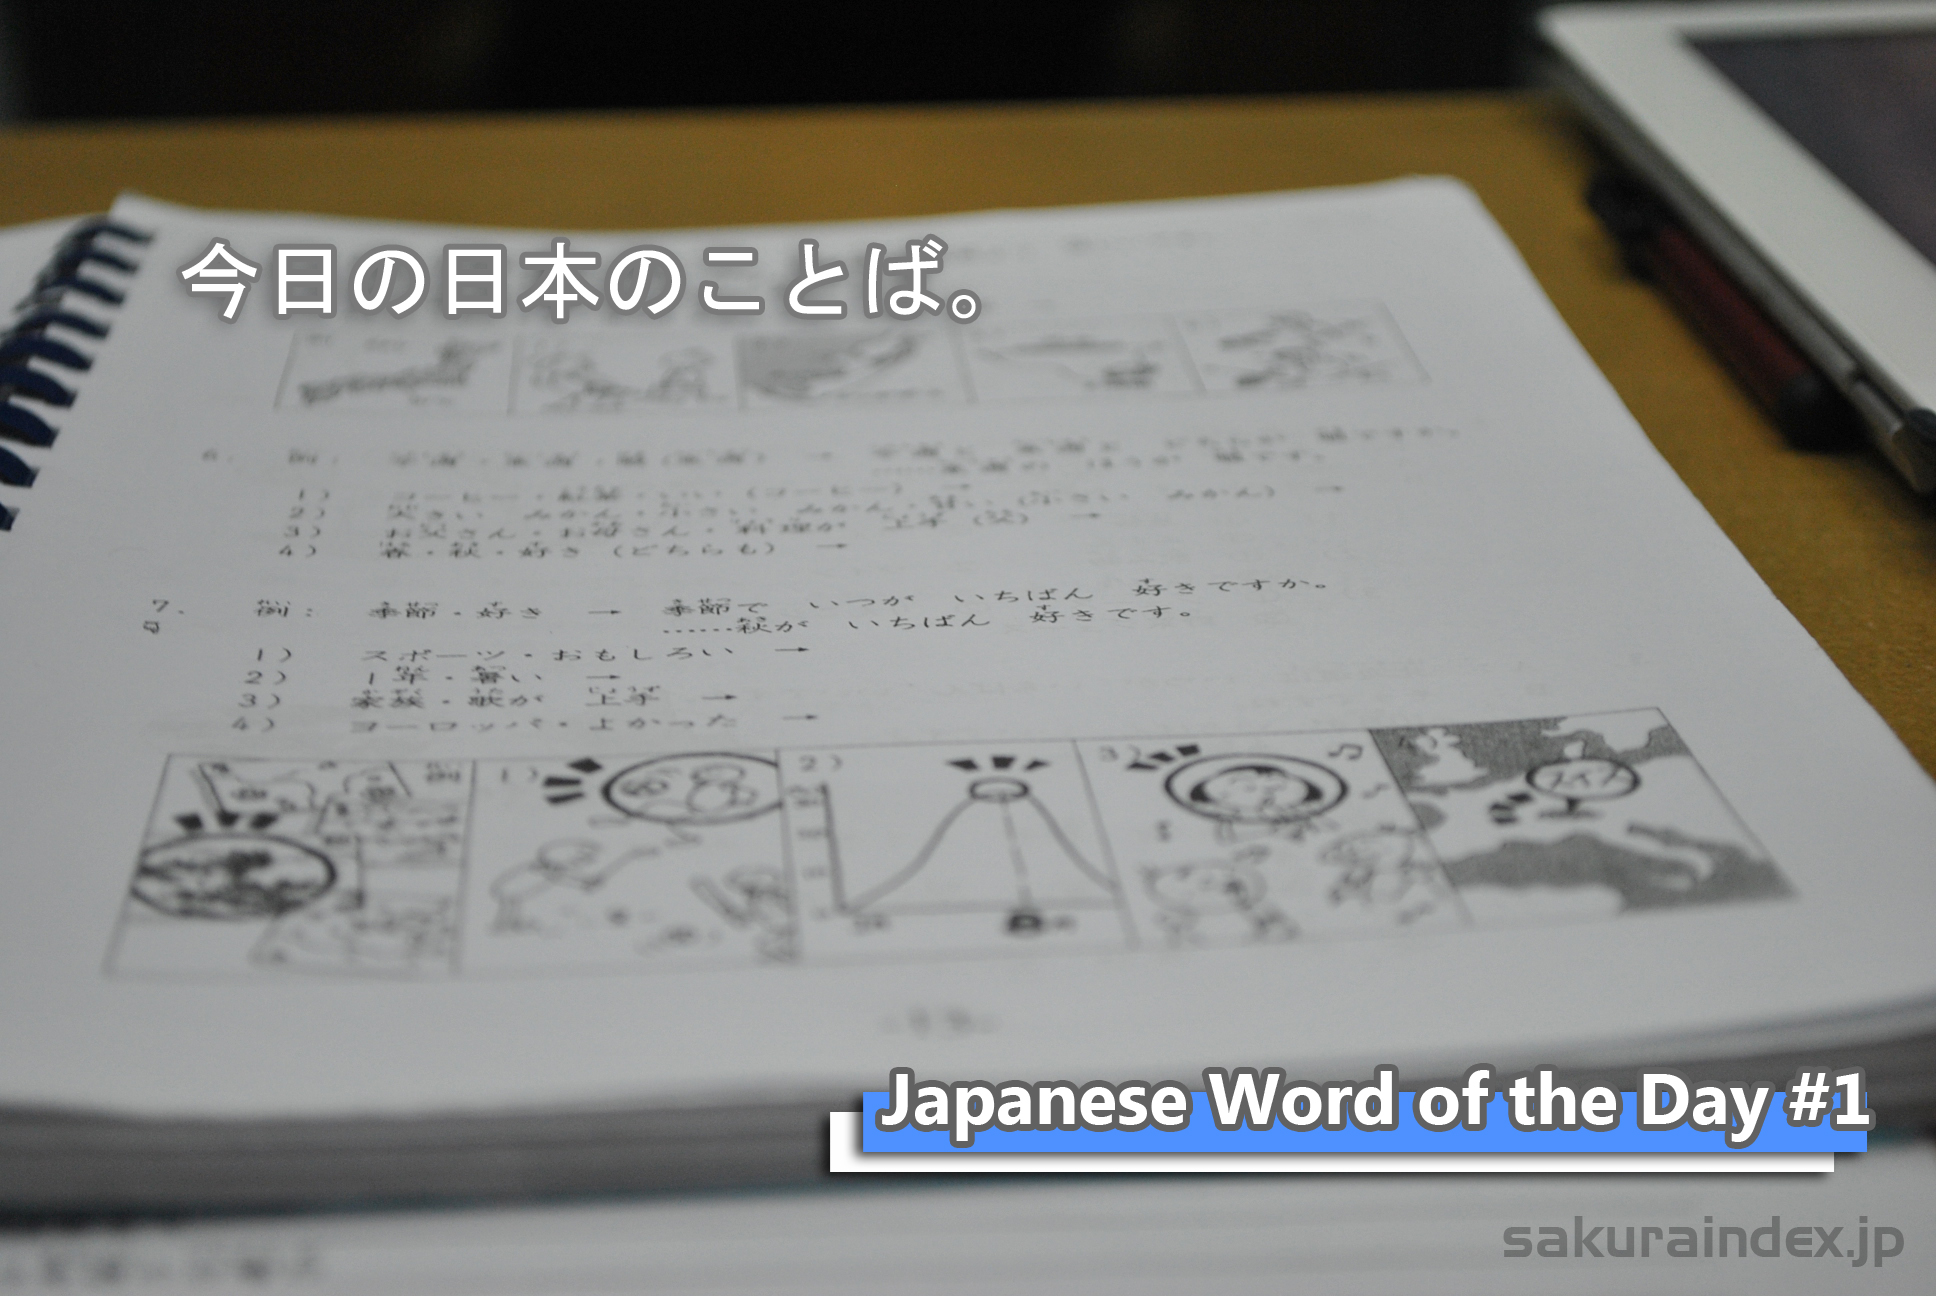 Japanese Word of the Day #1 (kyou no nihon no kotoba)